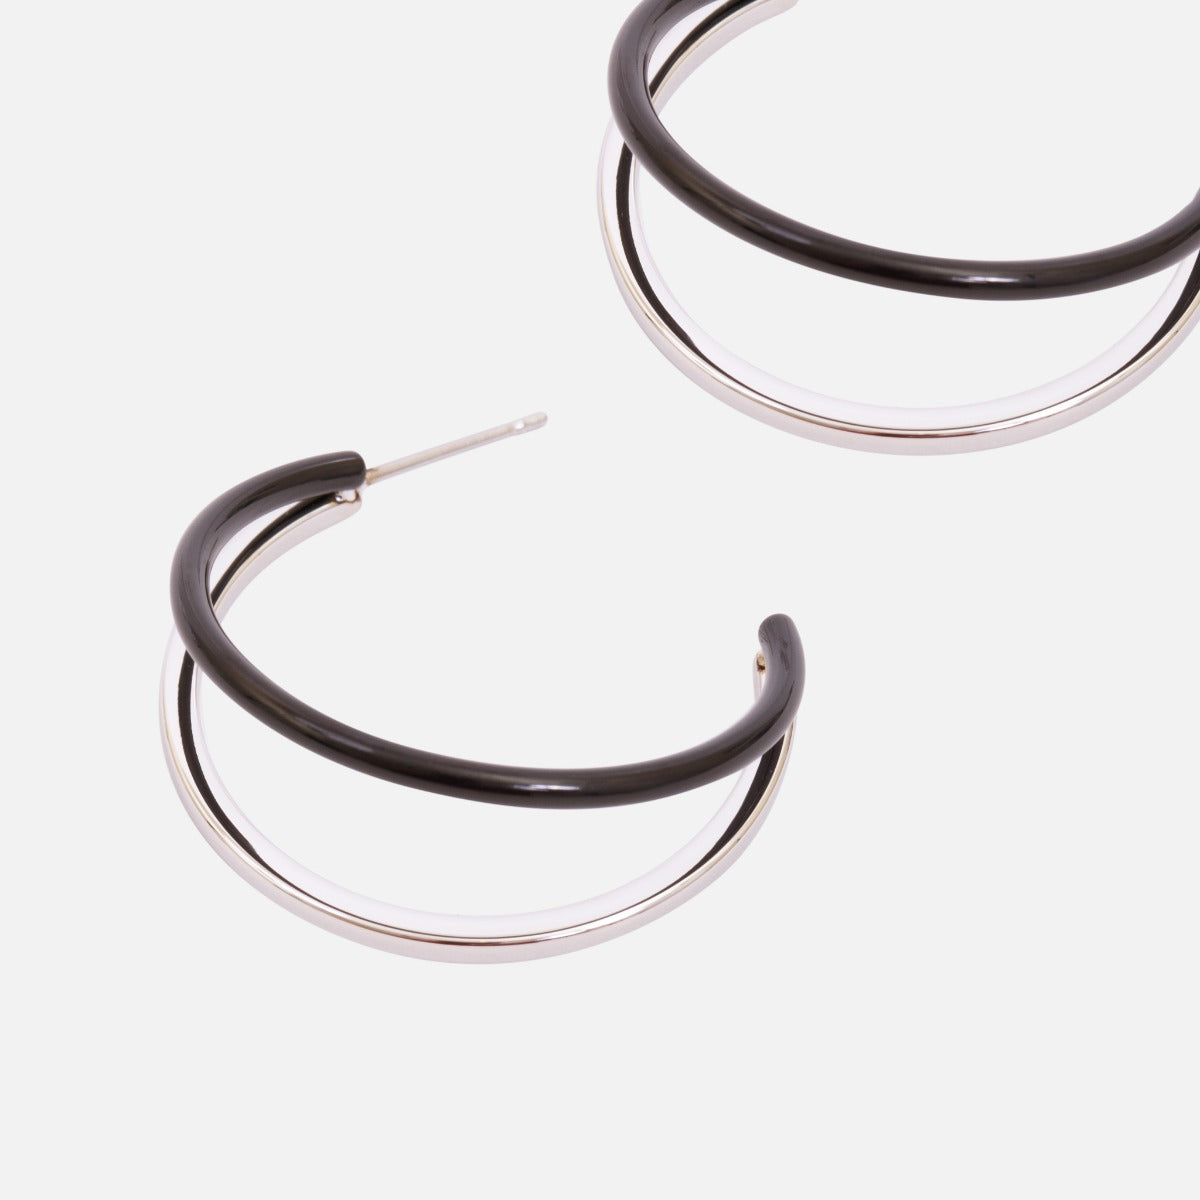 Stainless steel two tones double hoop earrings   